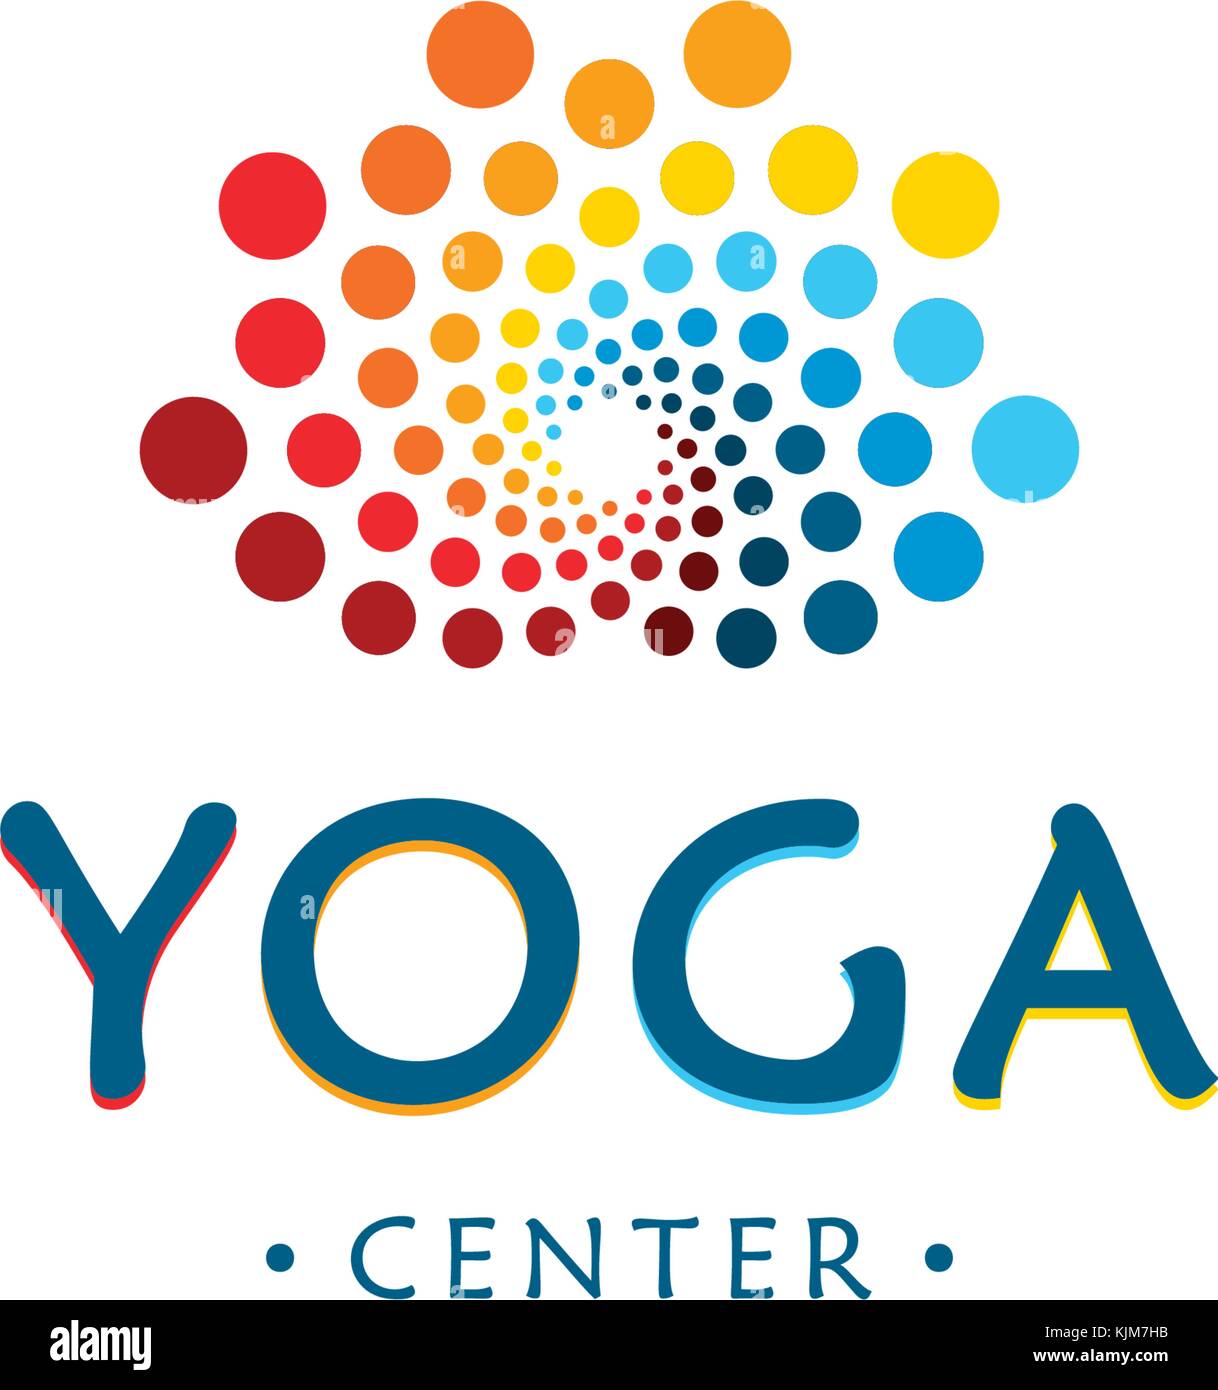 Yoga Zentrum Logo. Abstrakte Lotus beauty Blume. Runde digitale Form. bunte Kreise vektor Schriftzug. Stock Vektor